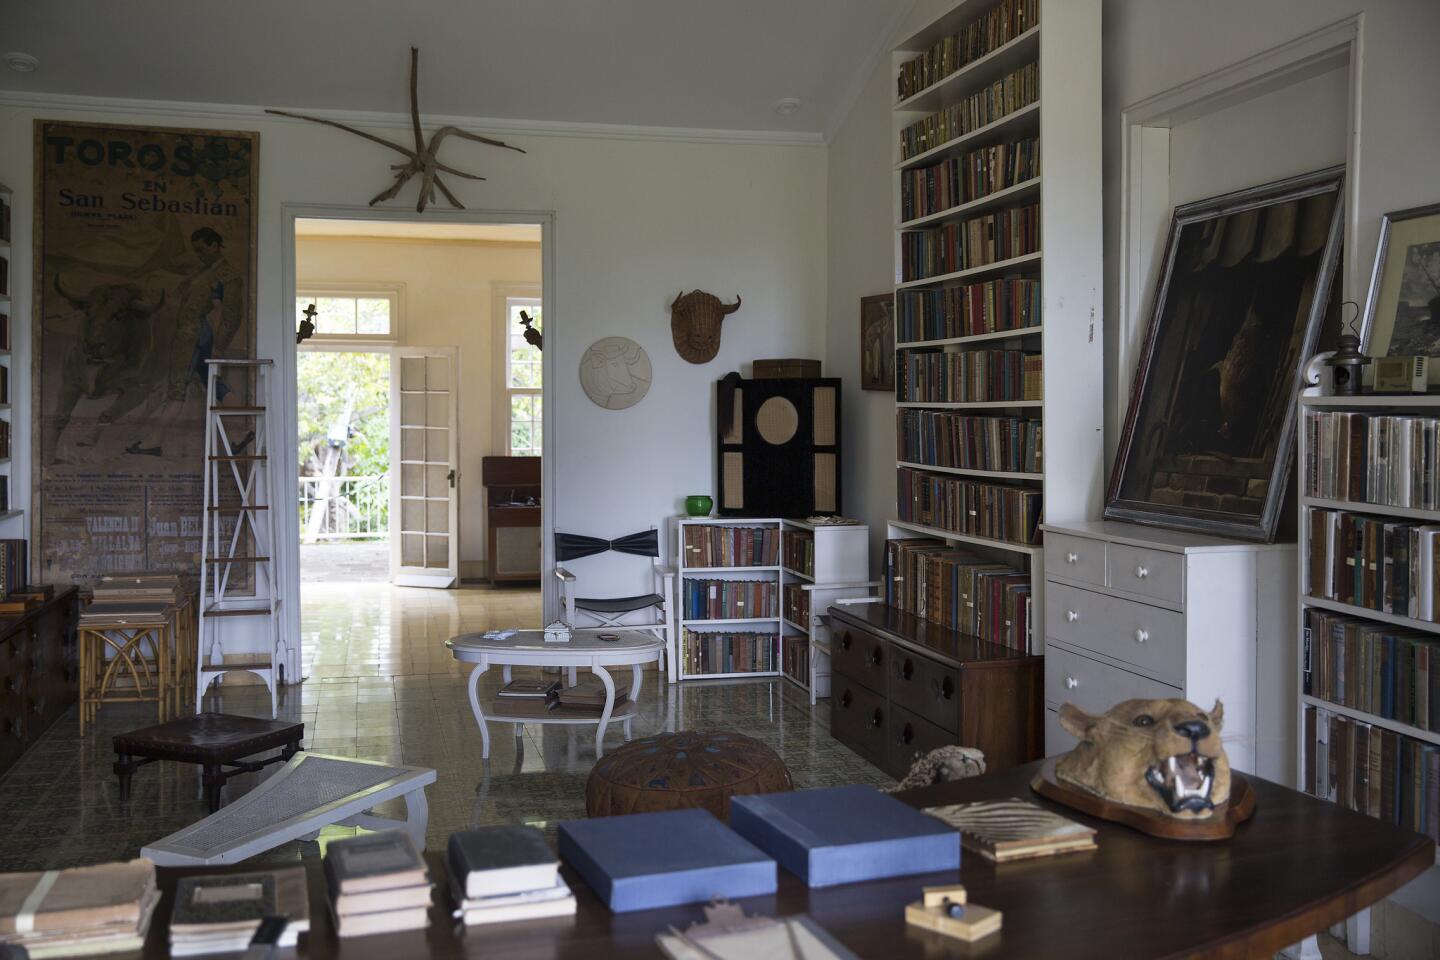 Inside Hemingway's home